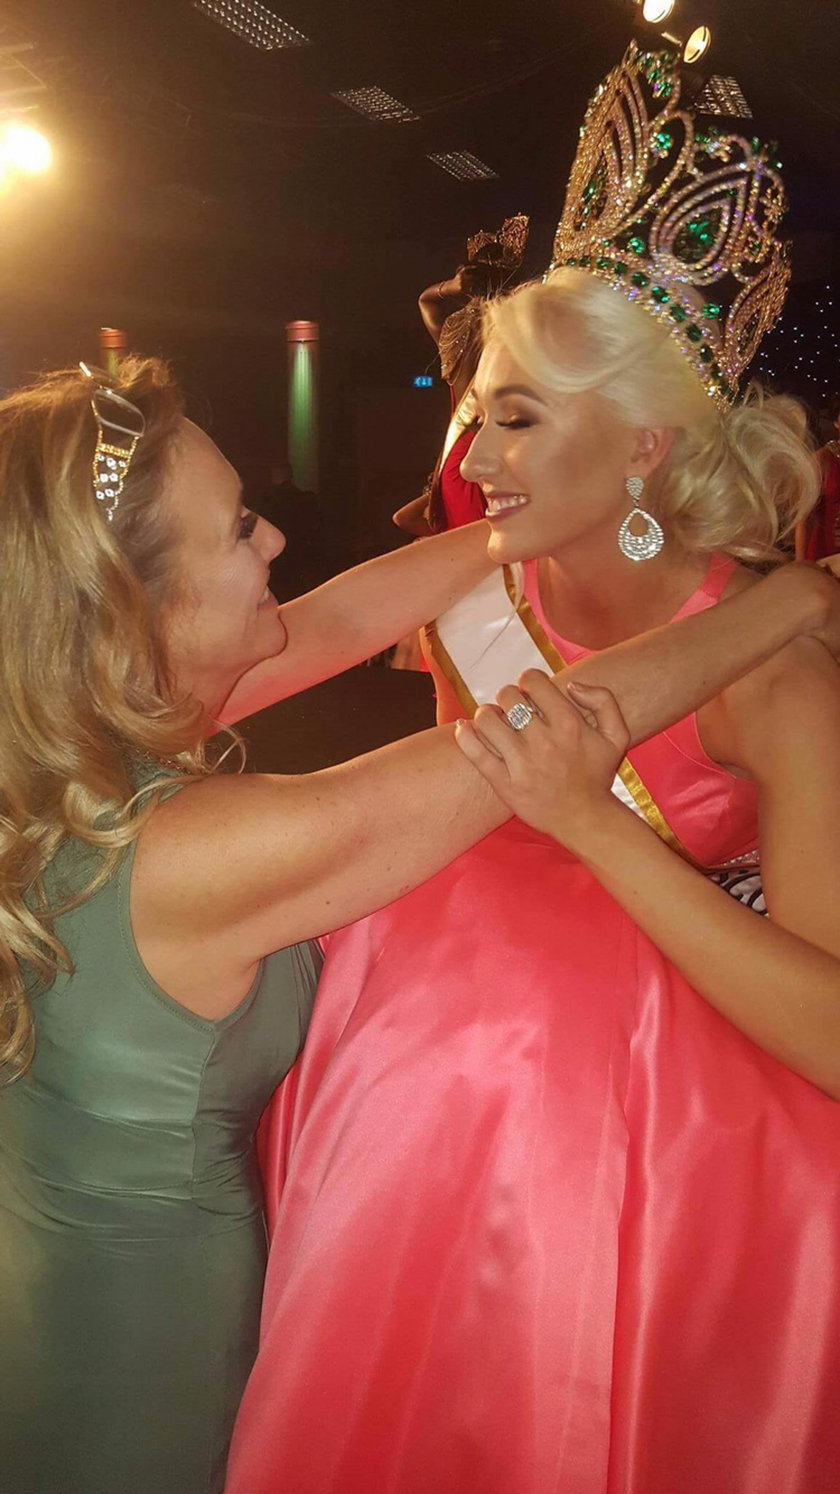 Wielka Brytania. 55-letnia Laurie Meisak wzięła udział w konkursie piękności razem ze swoją córką Amy